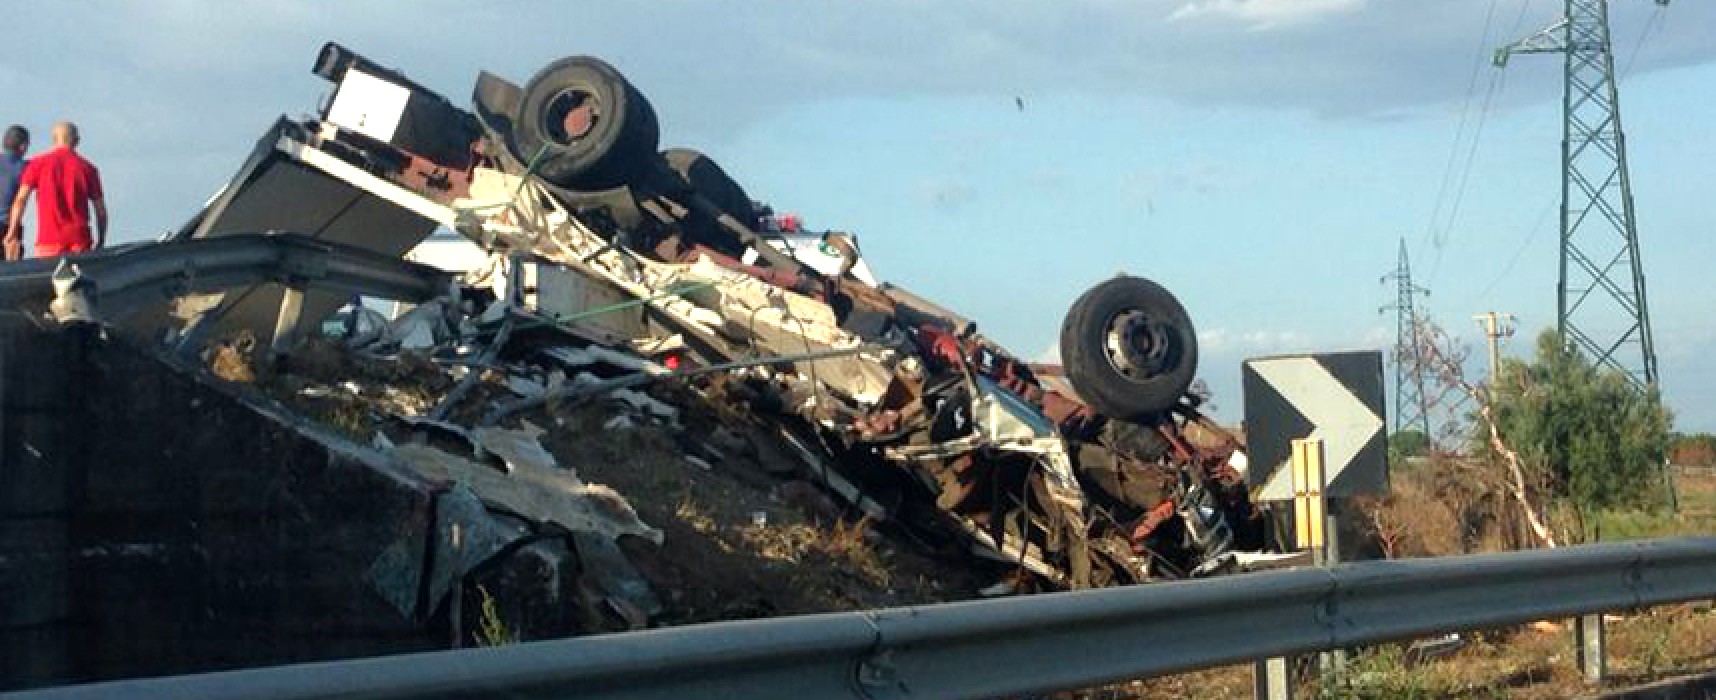 Morti due autotrasportatori biscegliesi in un grave incidente stradale vicino Taranto